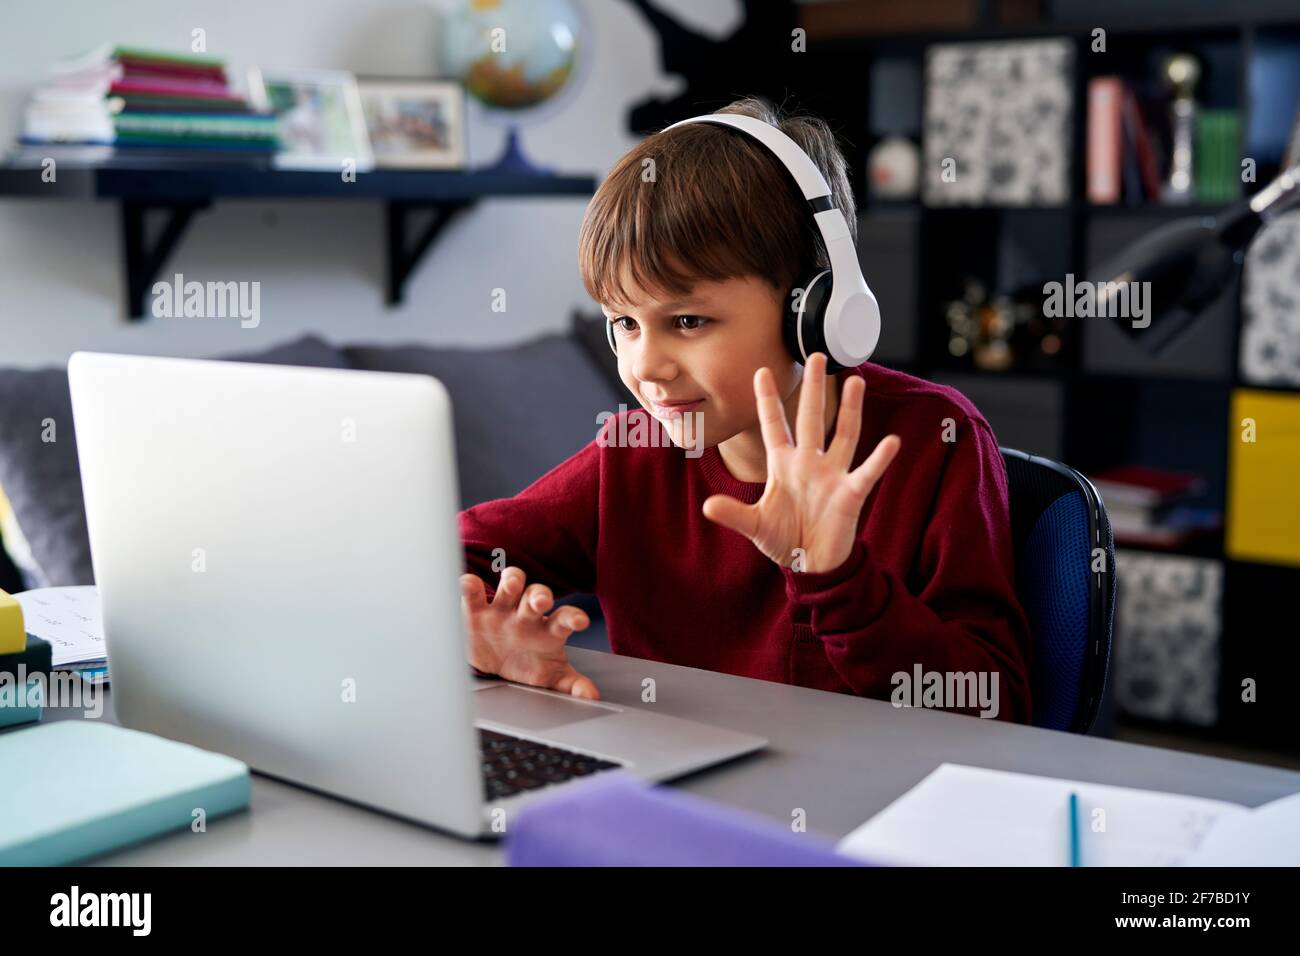 Garçon utilisant un ordinateur portable et agitant pendant un appel vidéo pendant les devoirs Banque D'Images